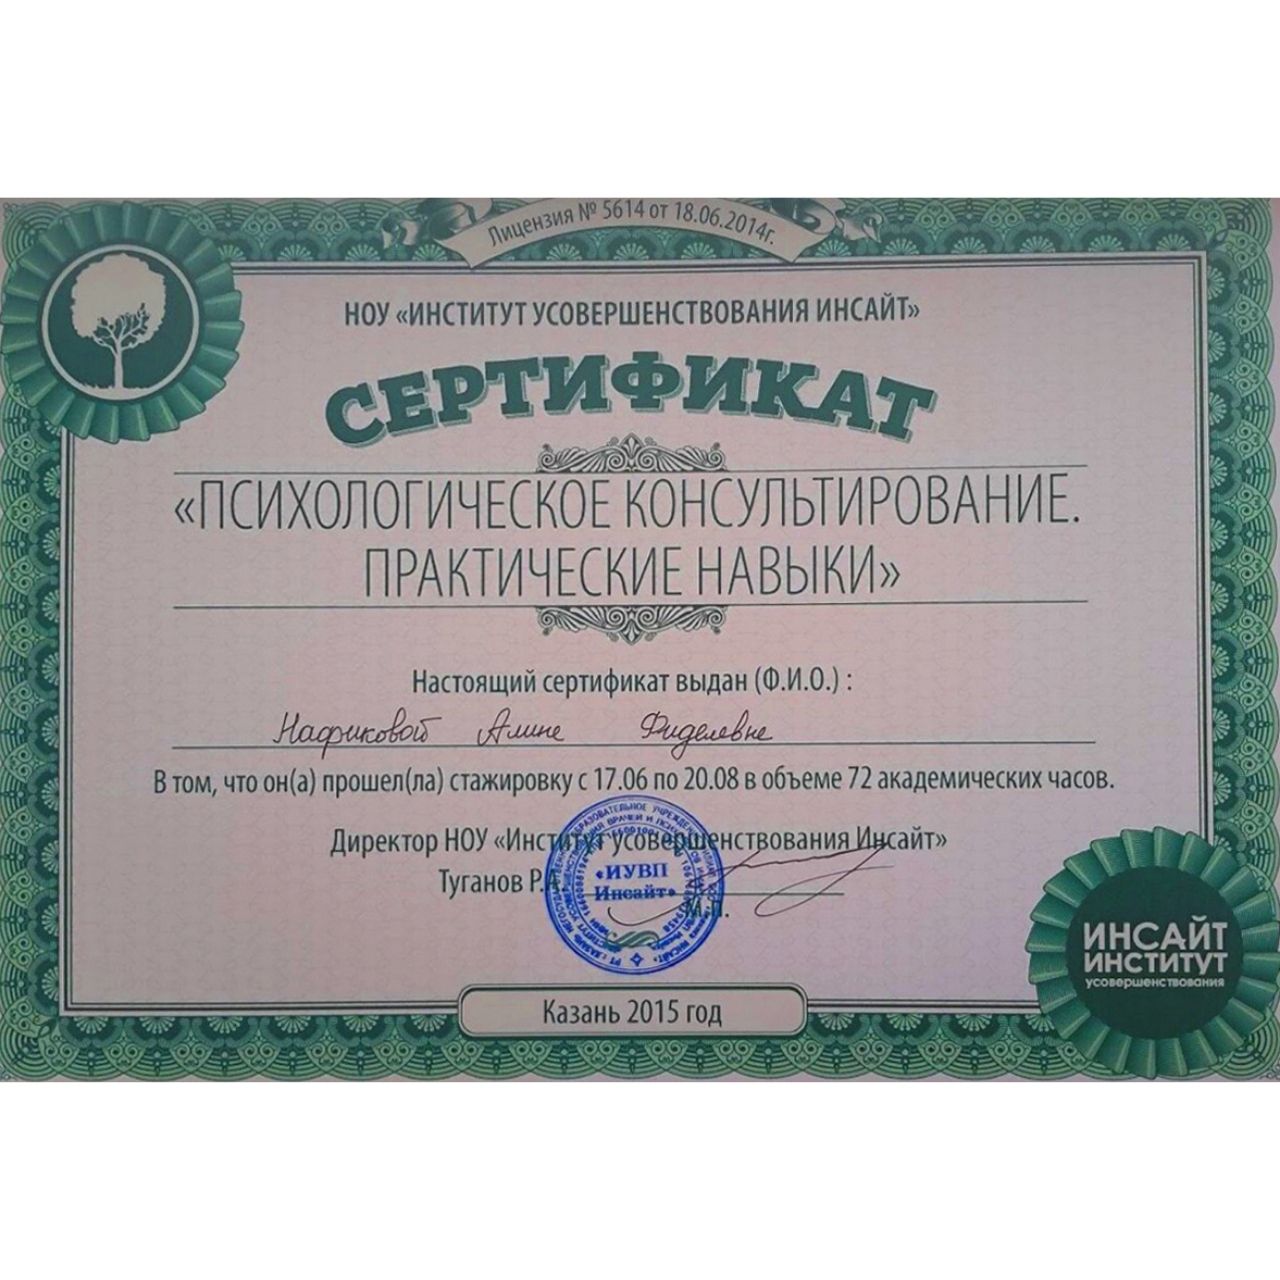 Сертификат Алины Нафиковой о стажировке по программе "Психологическое консультирование. Практические навыки"